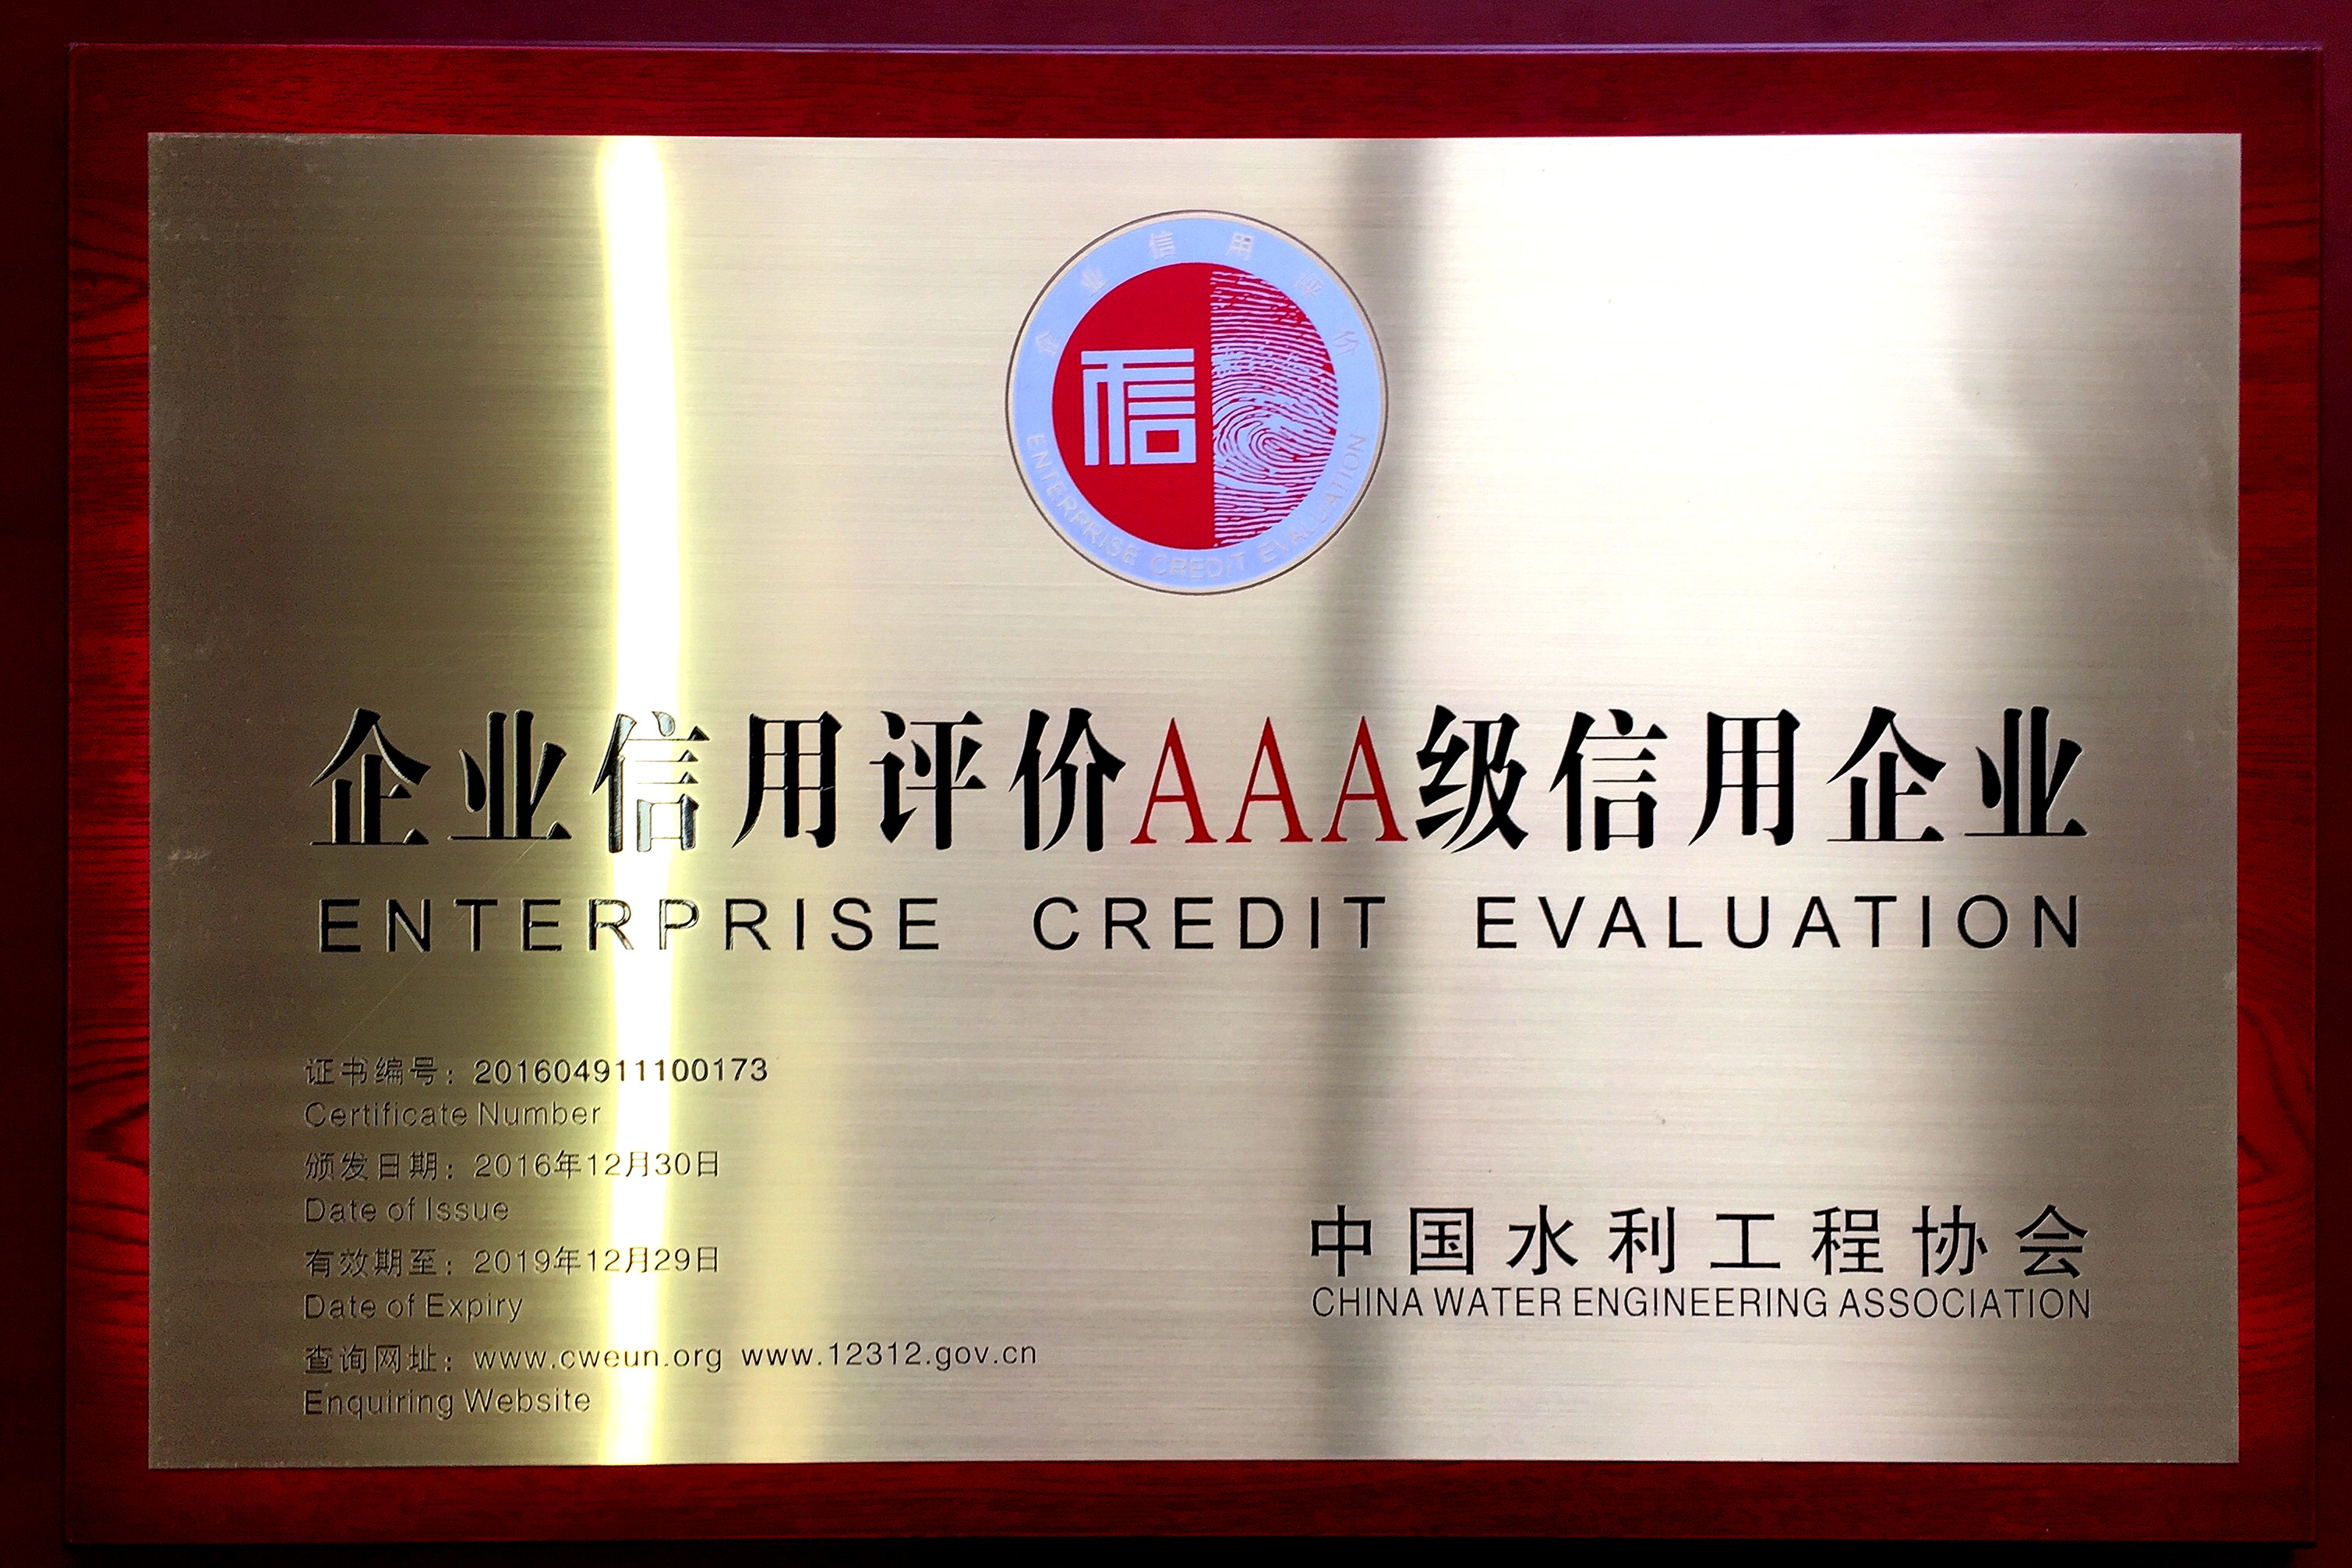 【奖项荣誉】中国水利工程协会“AAA级信用”称号